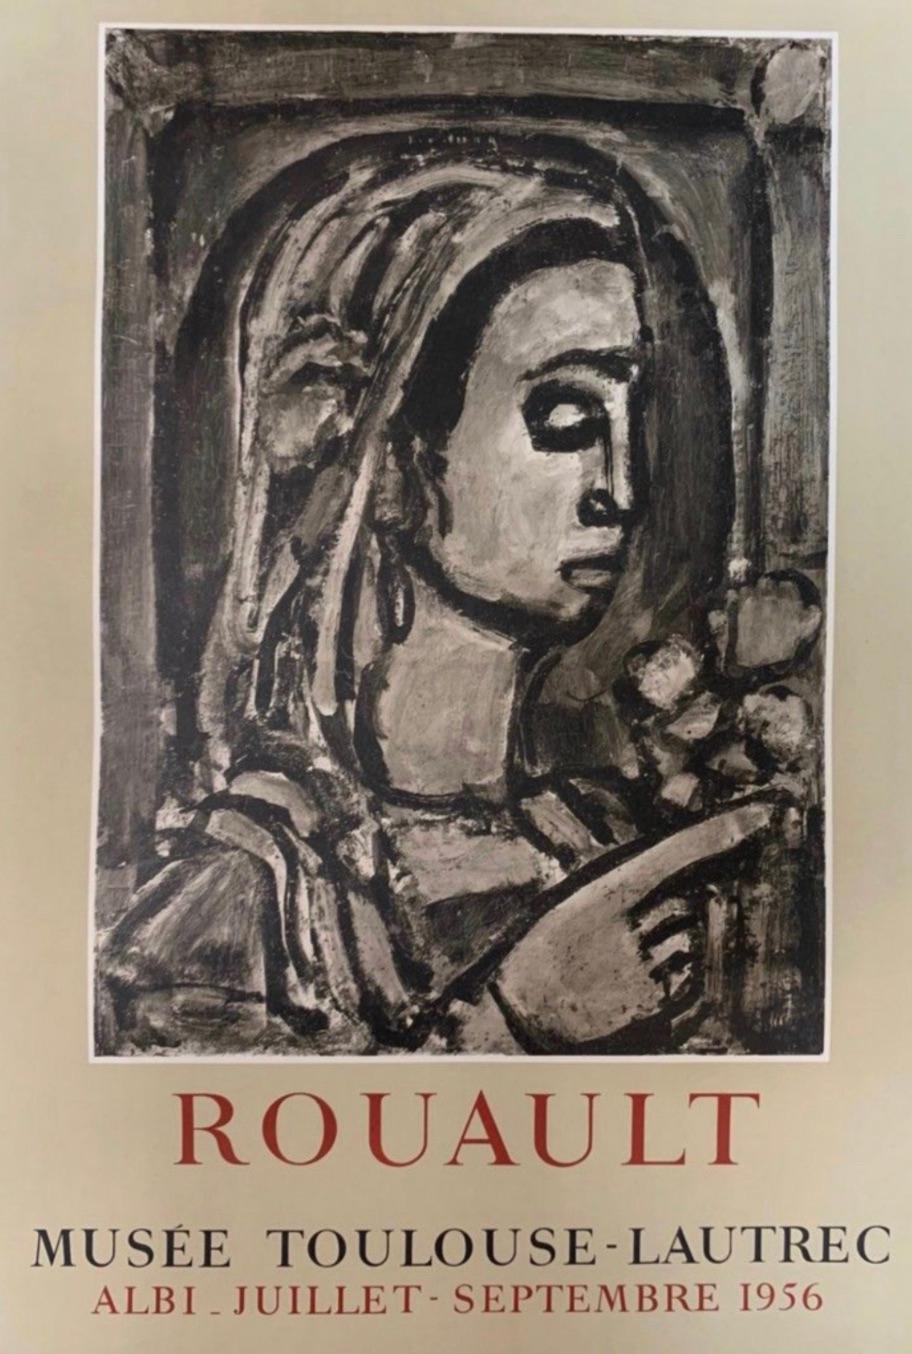 Affiche d'exposition originale, ROUAULT 'MUSEE TOULOUSE-LAUTREC', 1956